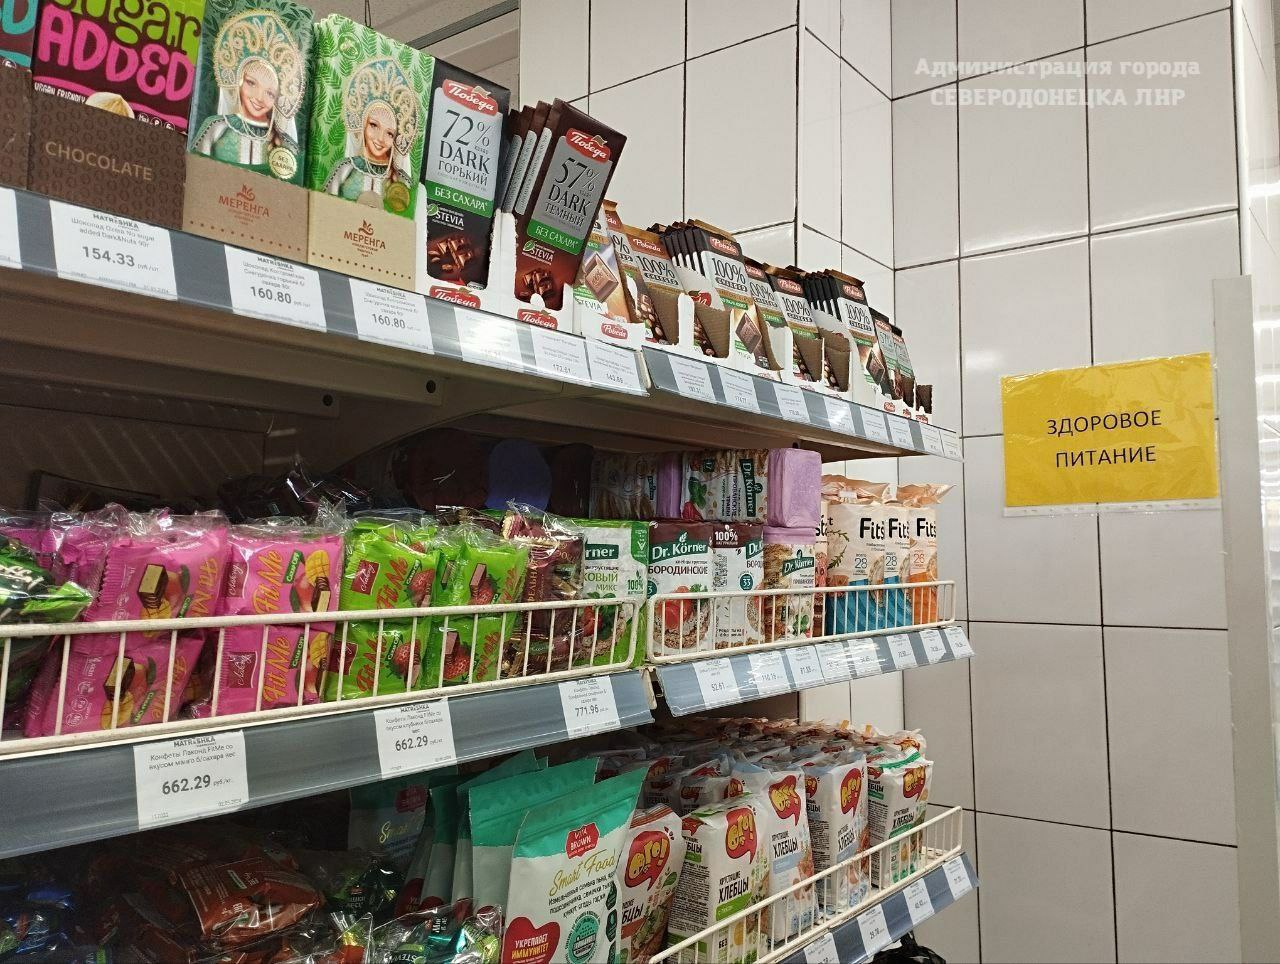 В Северодонецке открылся супермаркет "Матрешка"